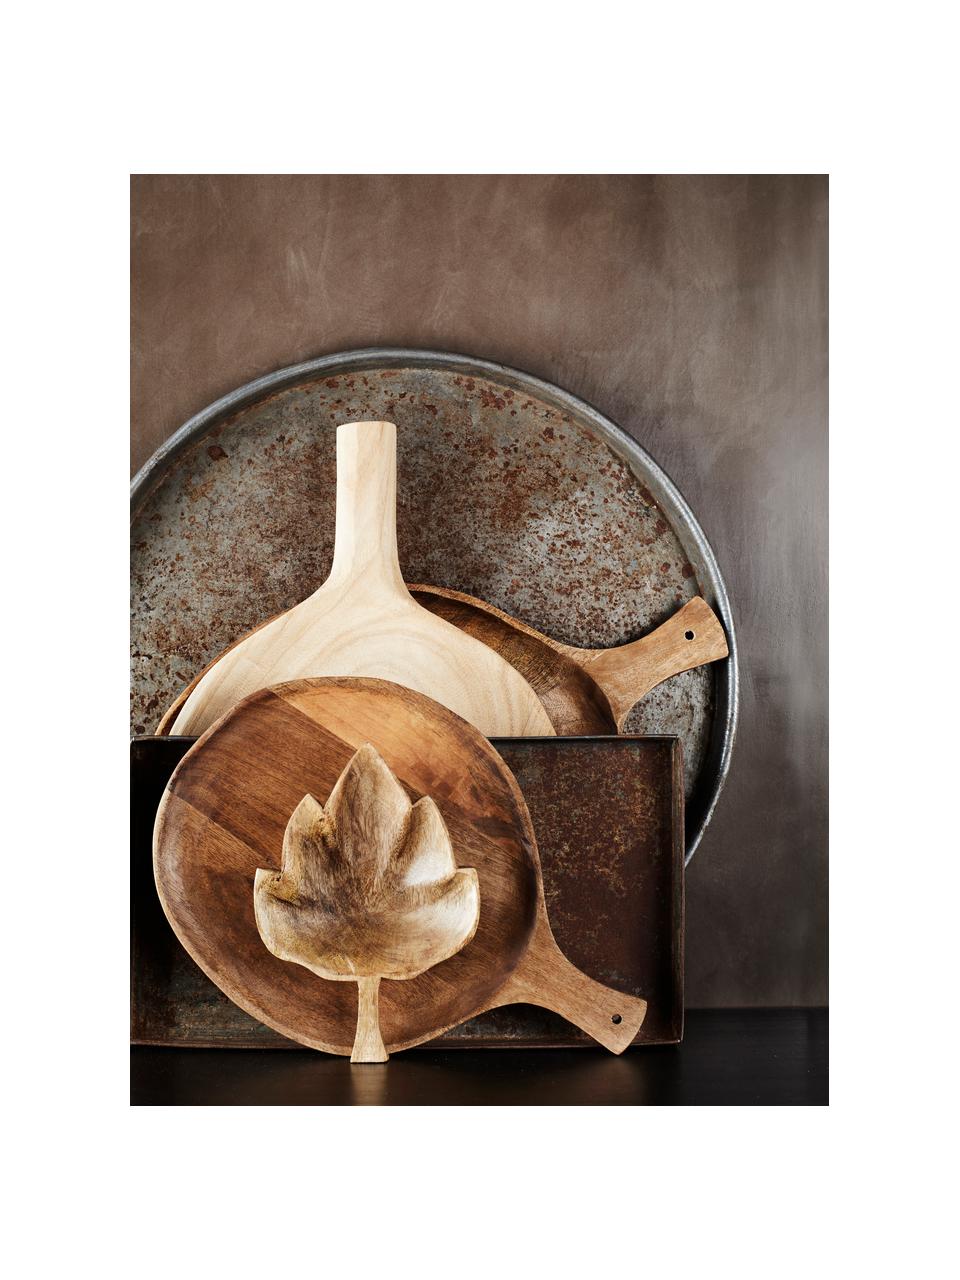 Dekoratívny podnos z recyklovaného kovu s patinou Cesar, Recyklovaná oceľ, Strieborná, Ø 51 cm